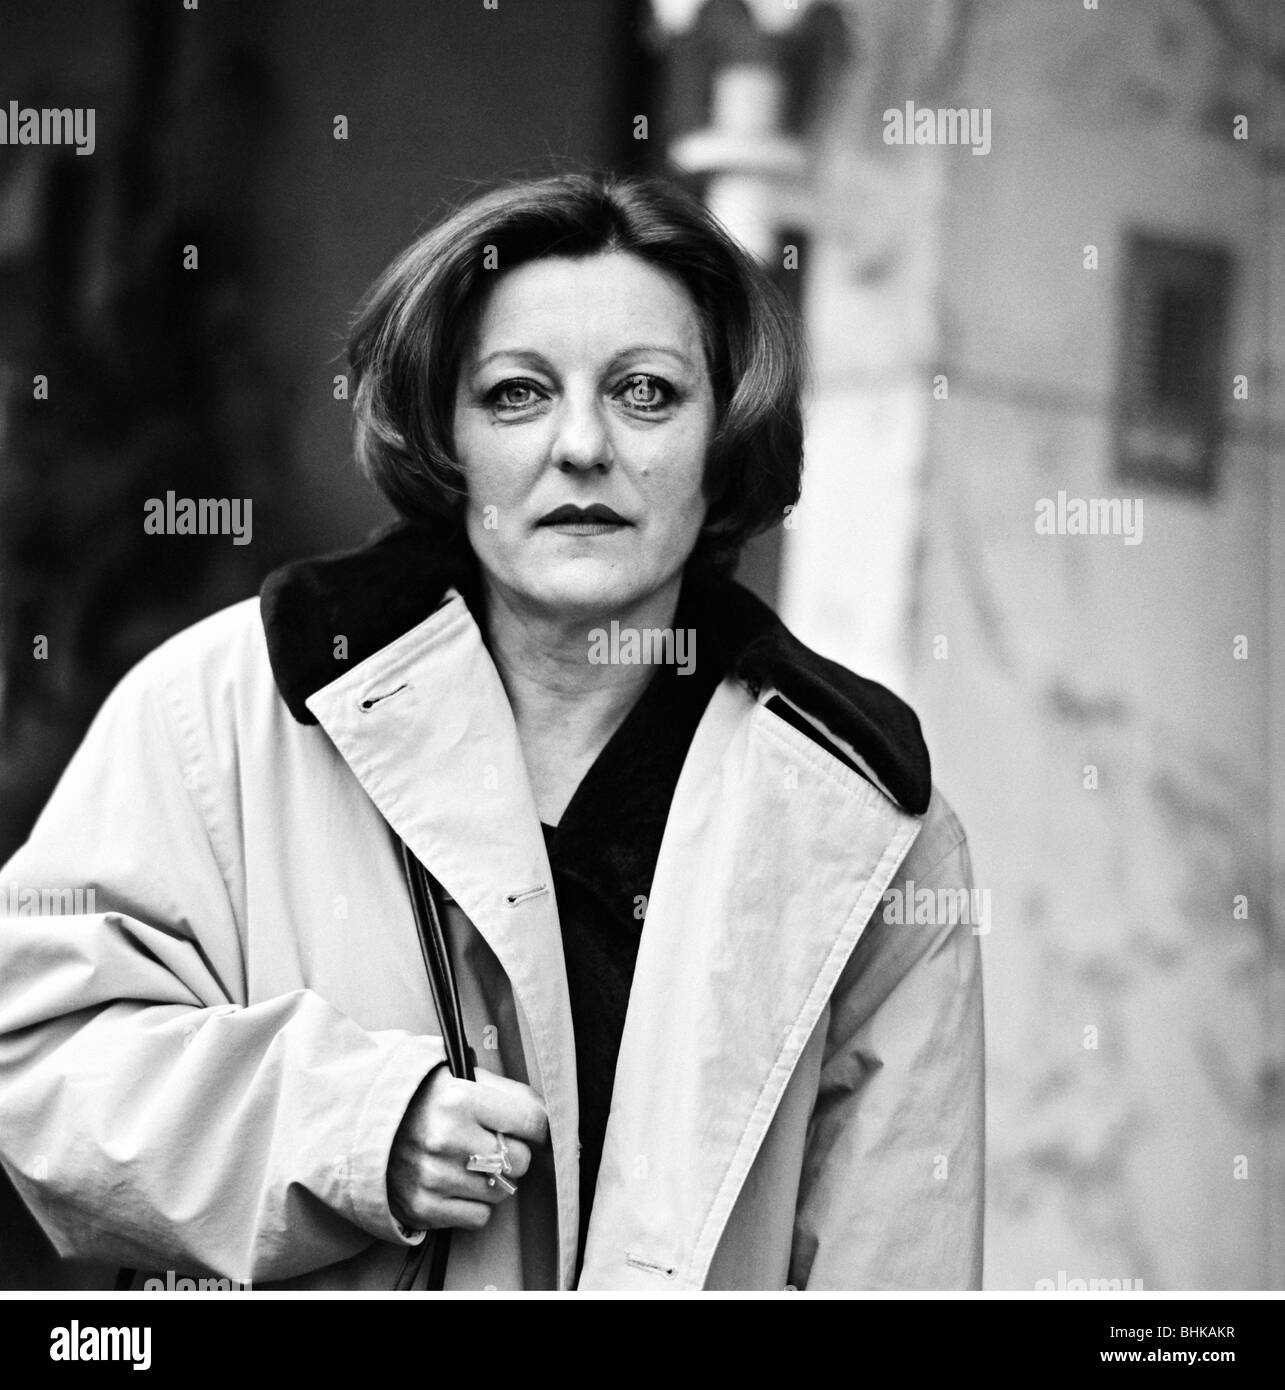 Mueller, Herta, * 17.8.1953, autore/scrittore tedesco, ritratto, 12.11.1998, Foto Stock